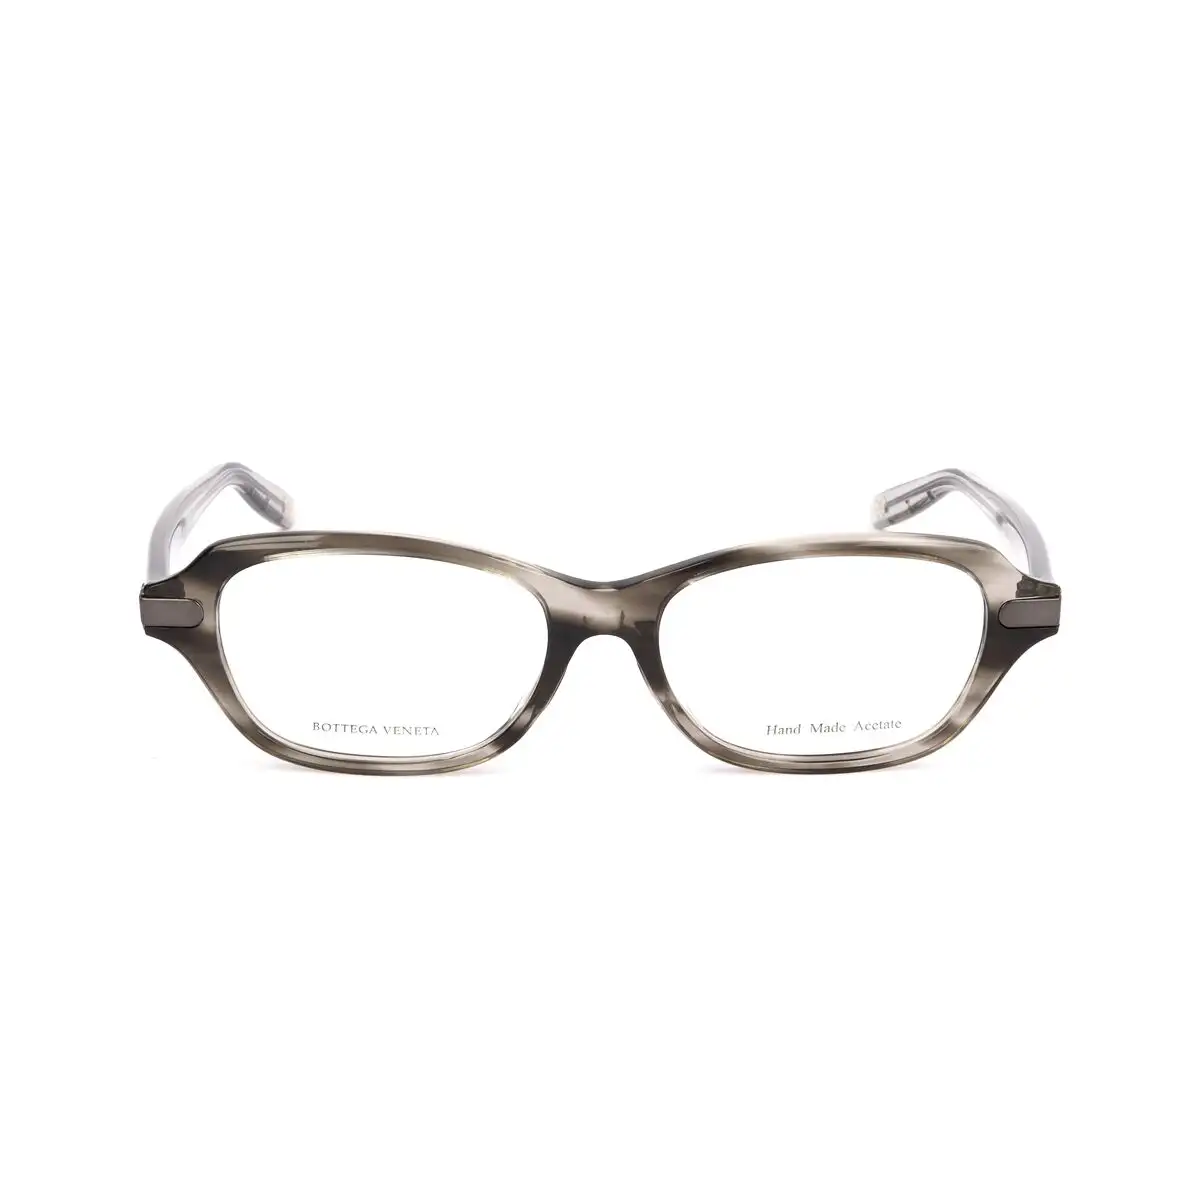 Monture de lunettes femme bottega veneta bv 601 j e7z noir_4643. DIAYTAR SENEGAL - Où Choisir Devient une Découverte. Explorez notre boutique en ligne et trouvez des articles qui vous surprennent et vous ravissent à chaque clic.